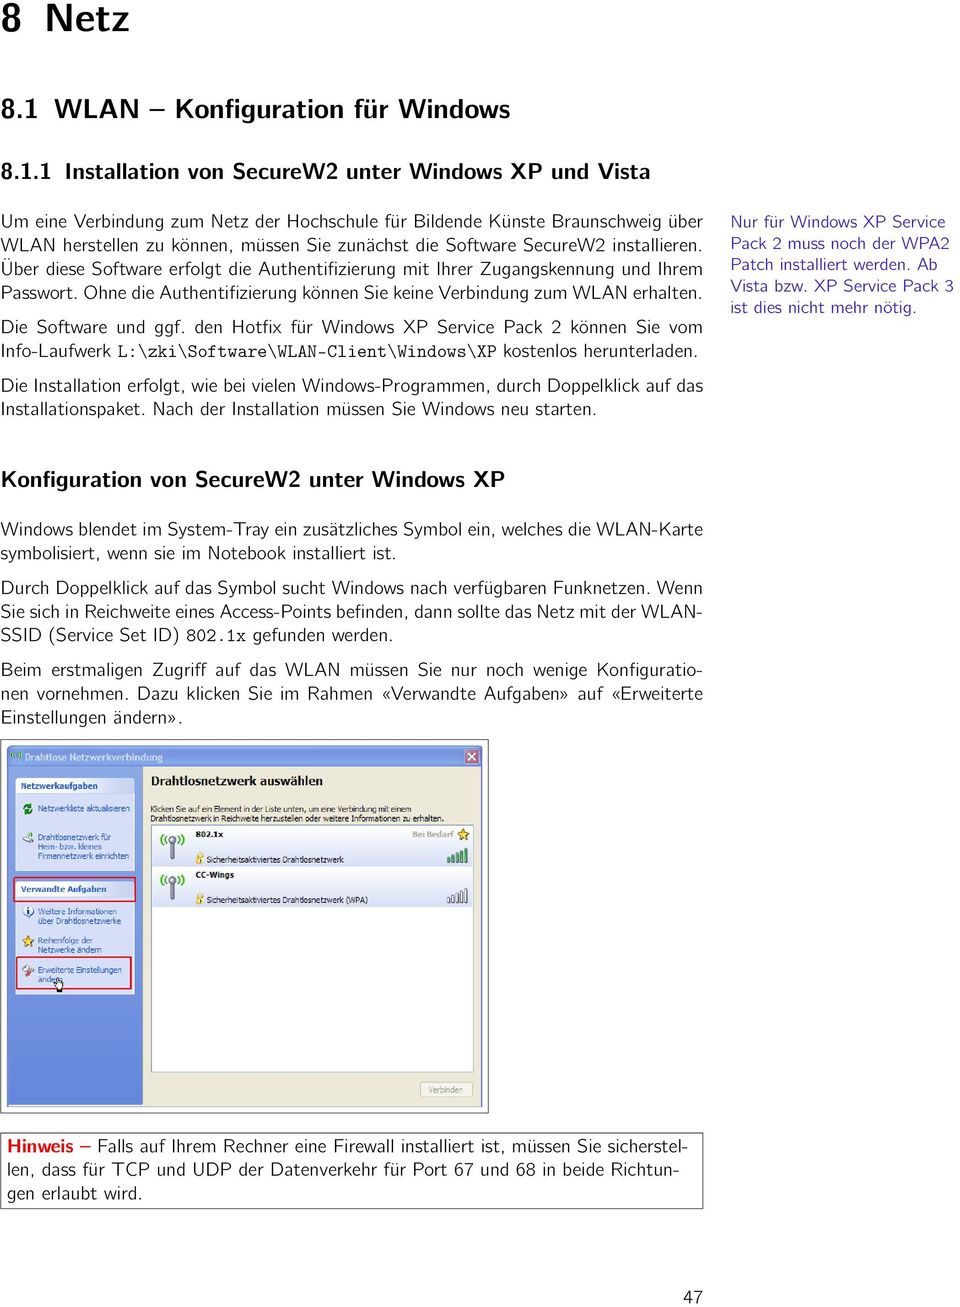 1 Installation von SecureW2 unter Windows XP und Vista Um eine Verbindung zum Netz der Hochschule für Bildende Künste Braunschweig über WLAN herstellen zu können, müssen Sie zunächst die Software